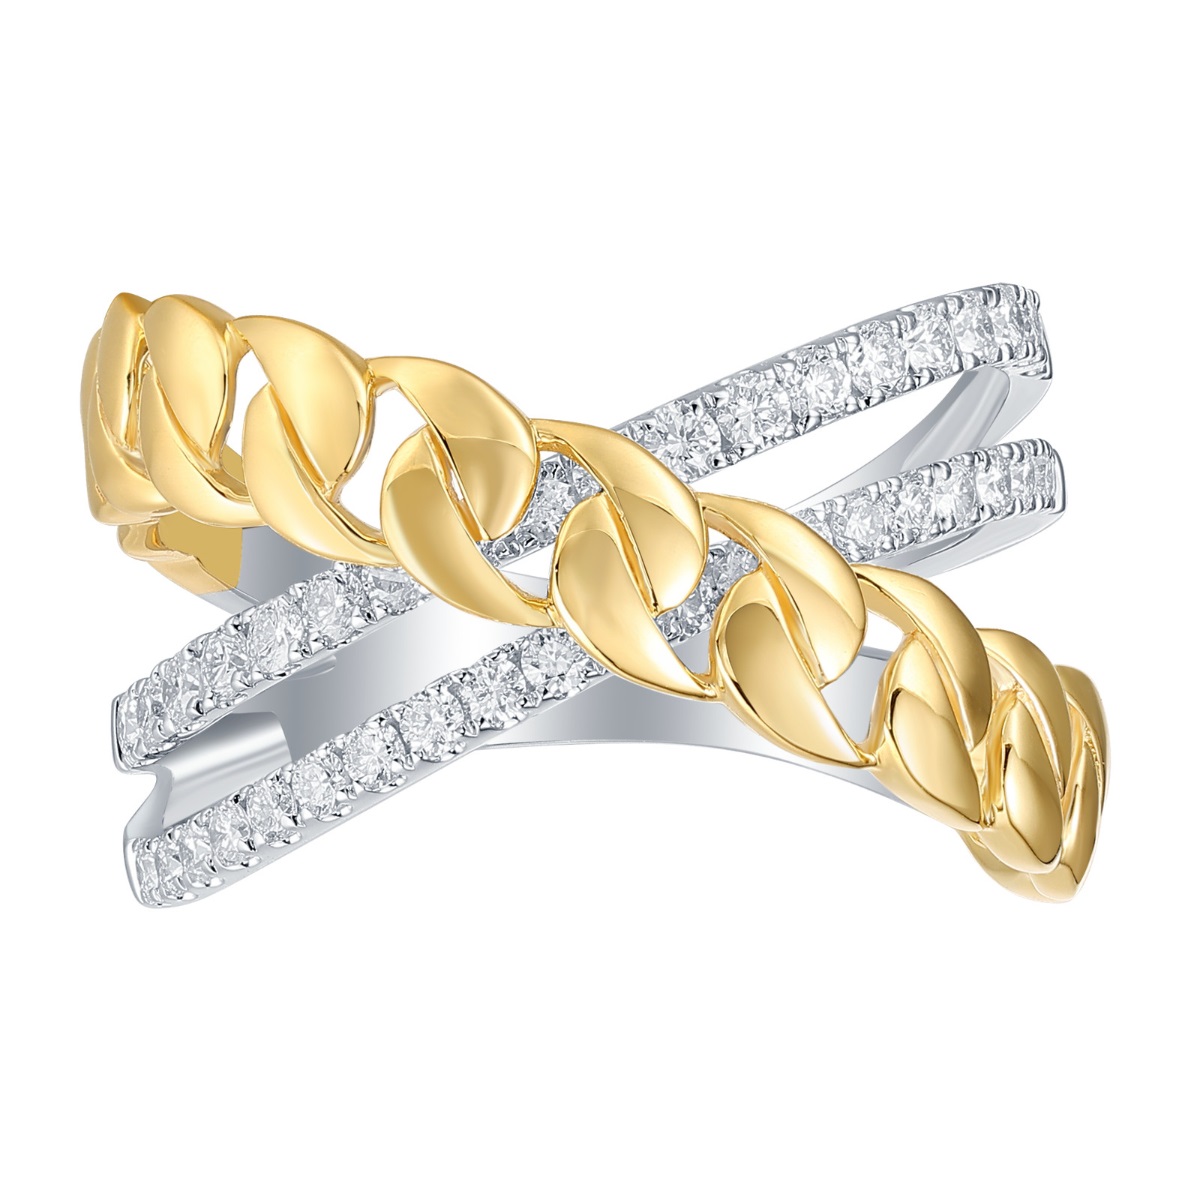 R36659WHT – 18K Yellow White Gold  Diamond Ring, 0.56 TCW